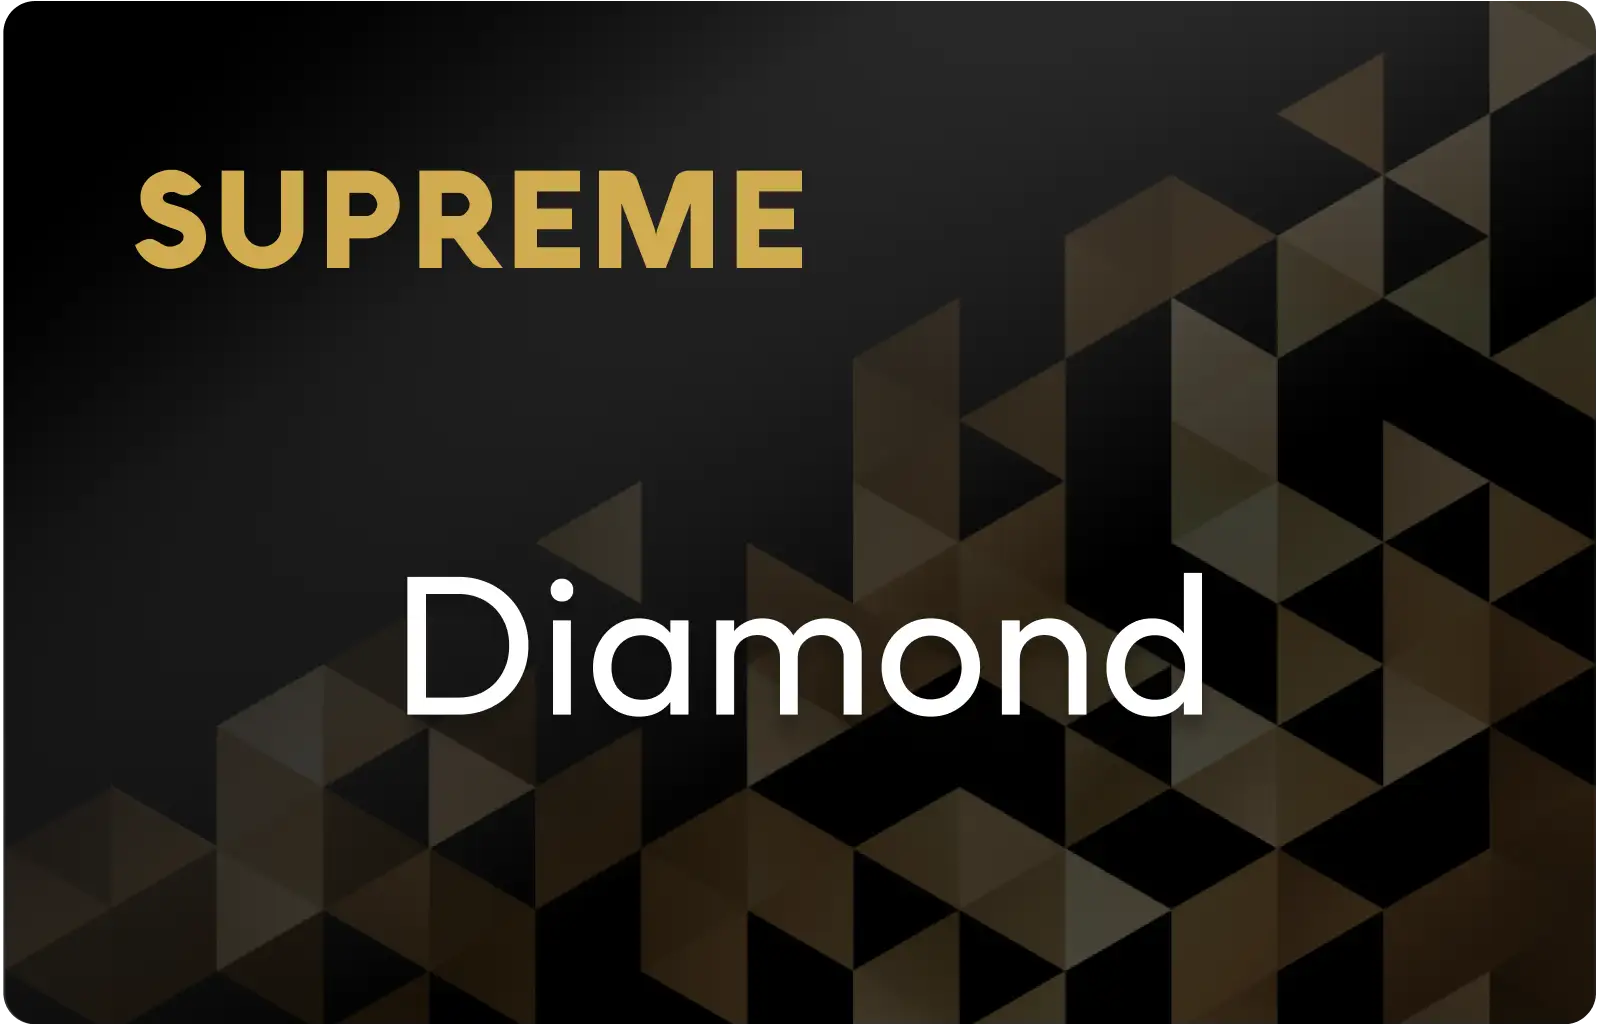 SUPREME Diamond Customer